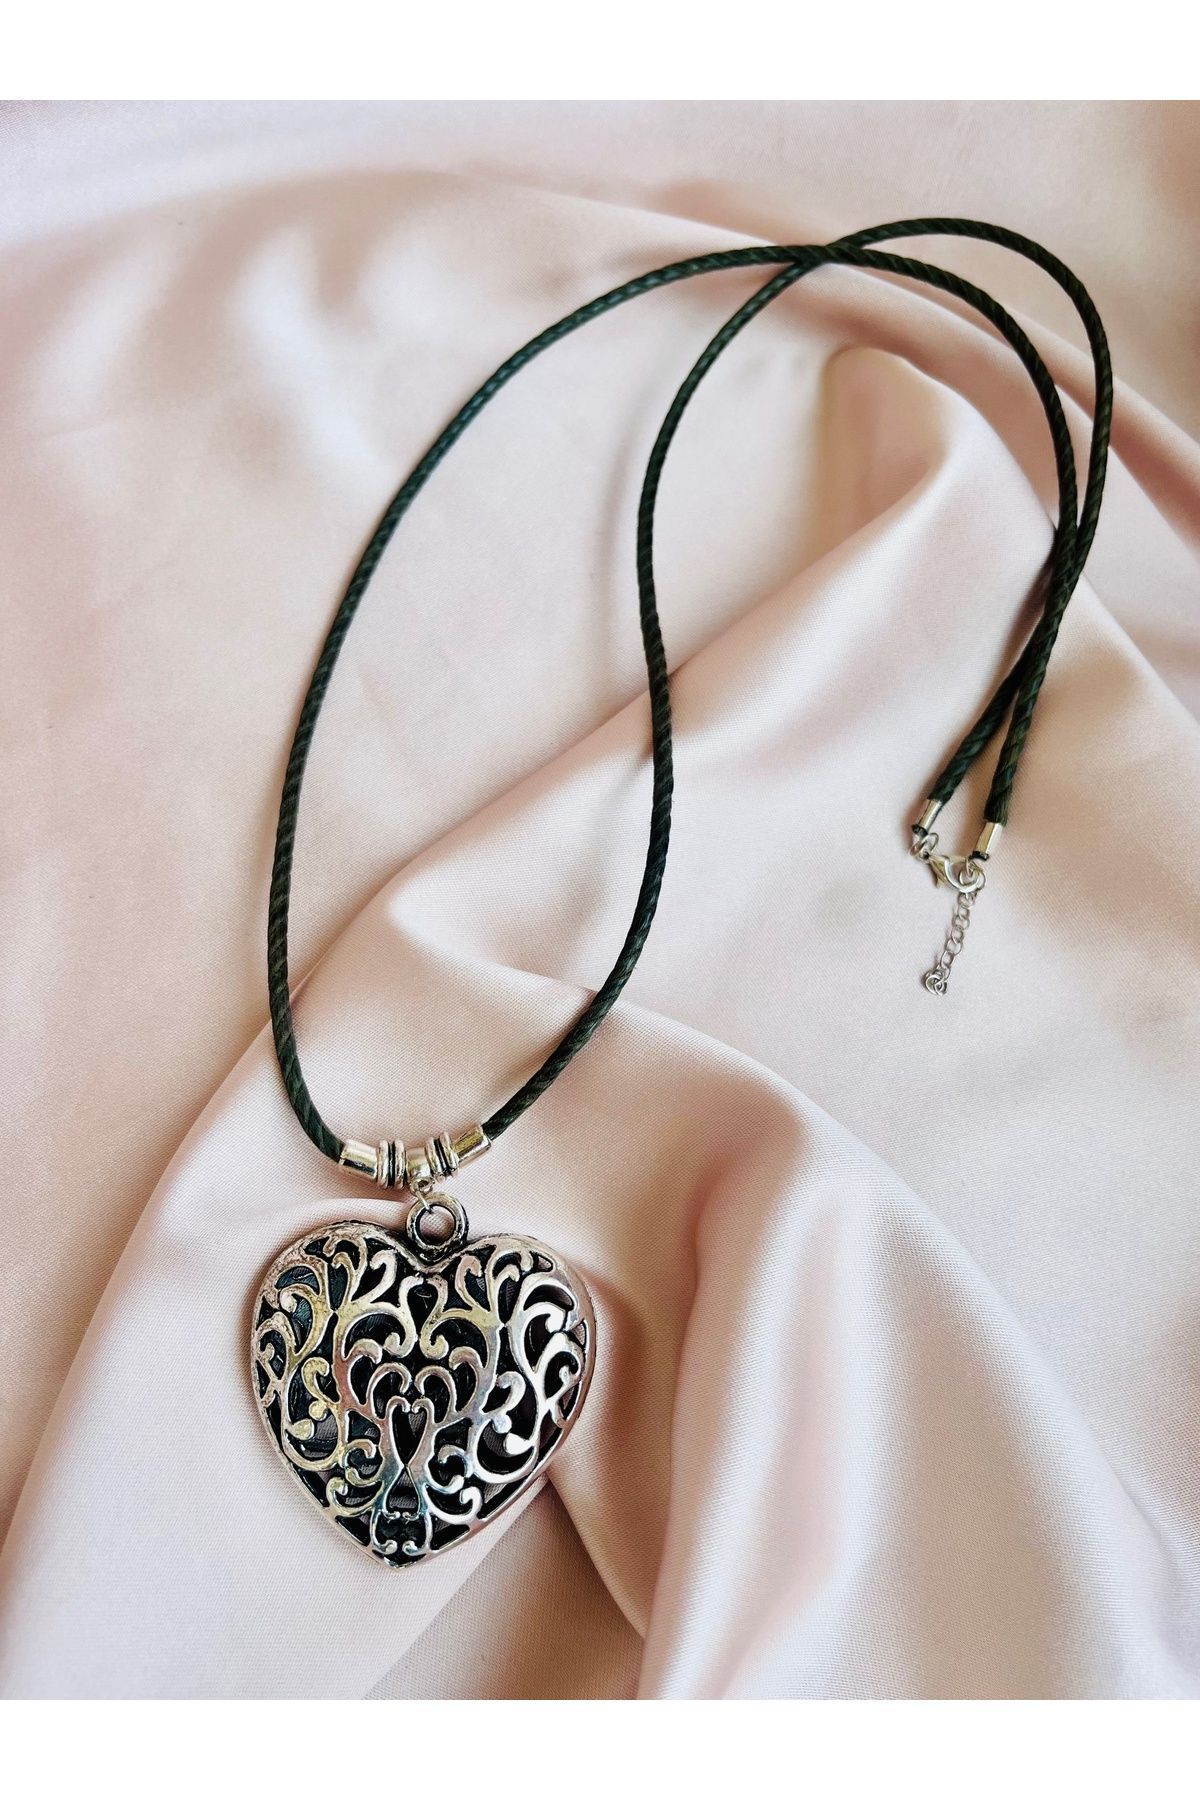 COCOSH TAKI Haki yeşi ipli gümüş renk kalp motifli uzun çoklu özel tasarım kolye